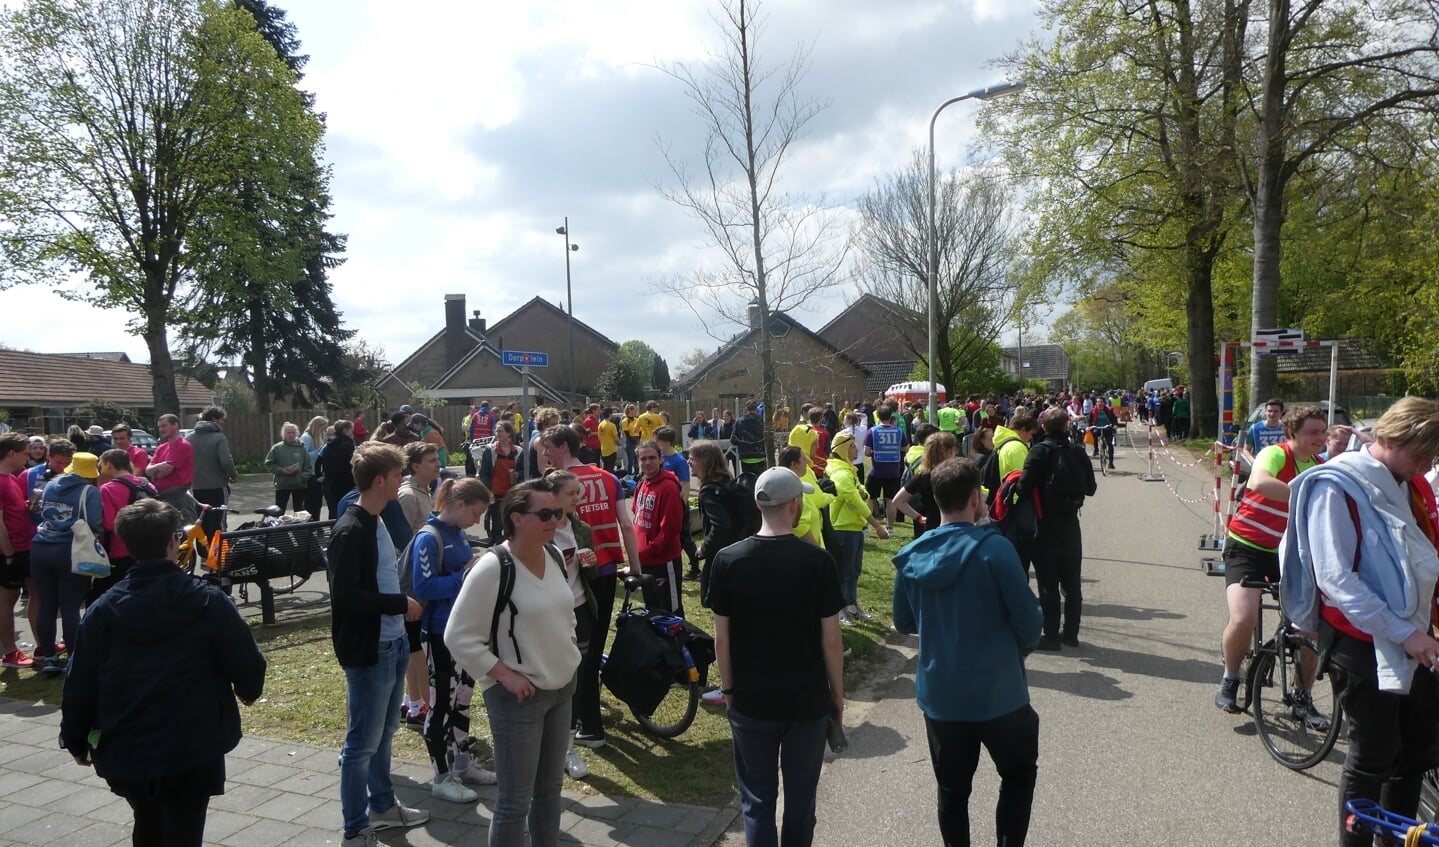 Barchem werd zaterdag weer bevolkt door duizenden studenten die deelnamen aan de Batavierenrace. 